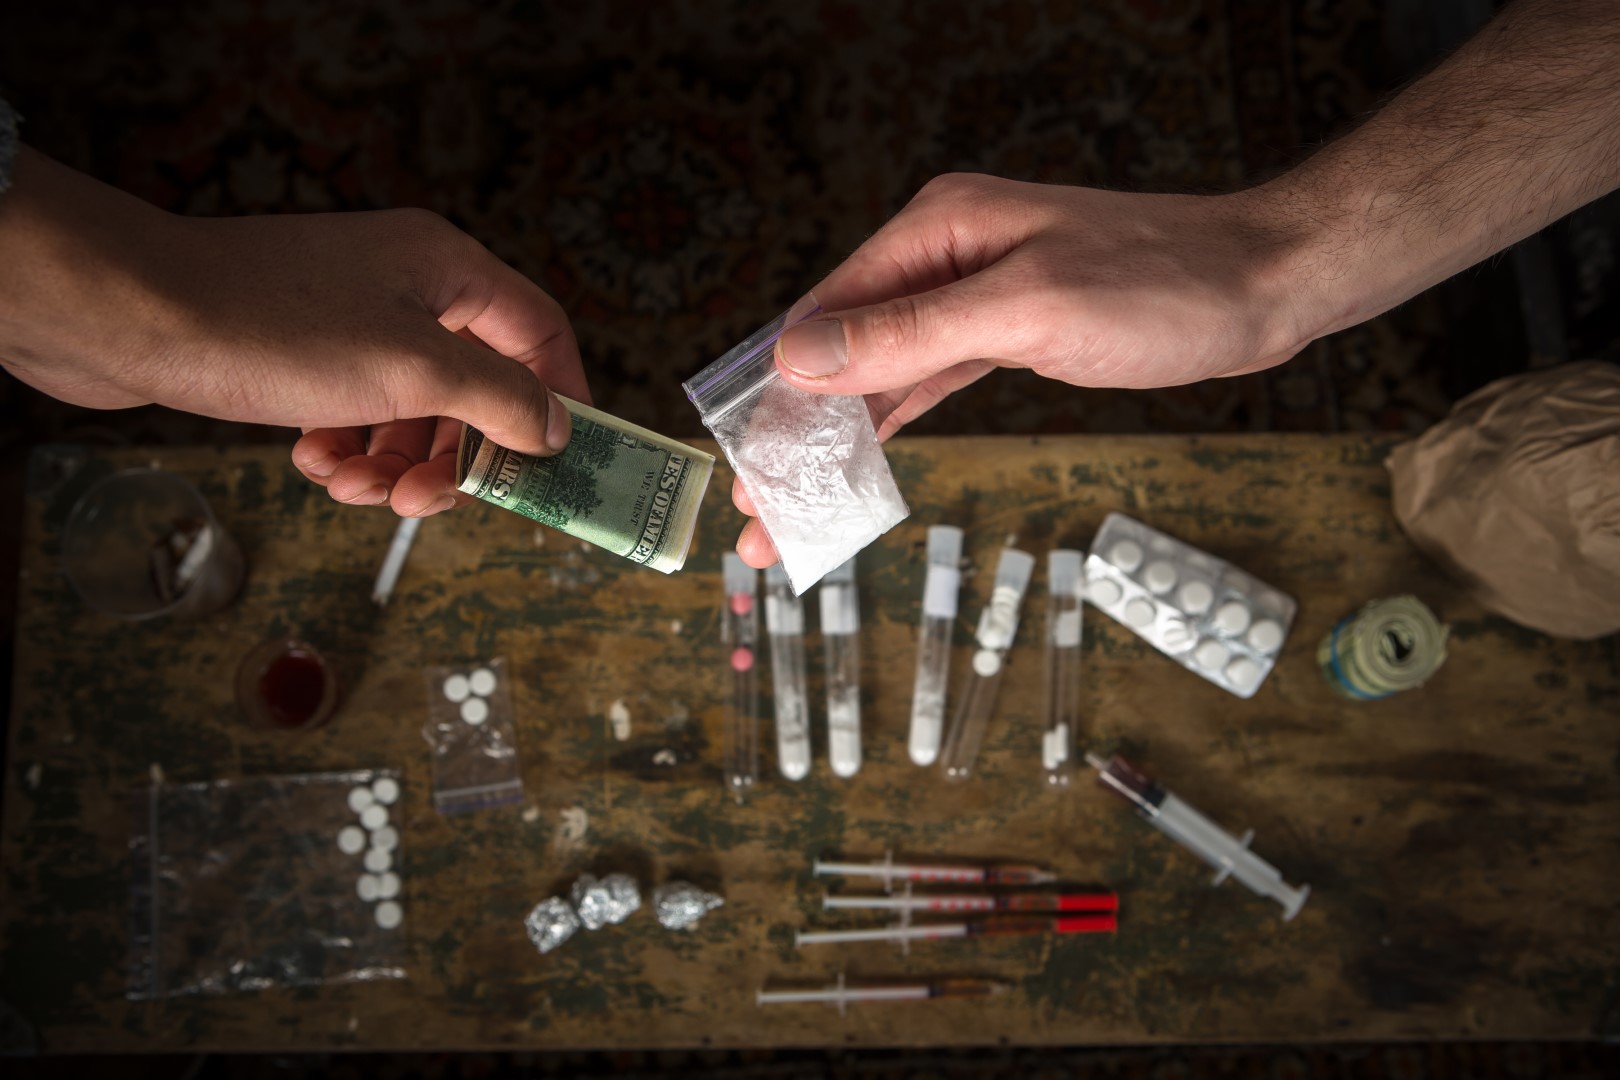 רכישה, החזקה ומכירה של סמים ניתנות לעונש על פי חוק. סוגים רבים של סמים וסמים מיוצגים על השולחן.